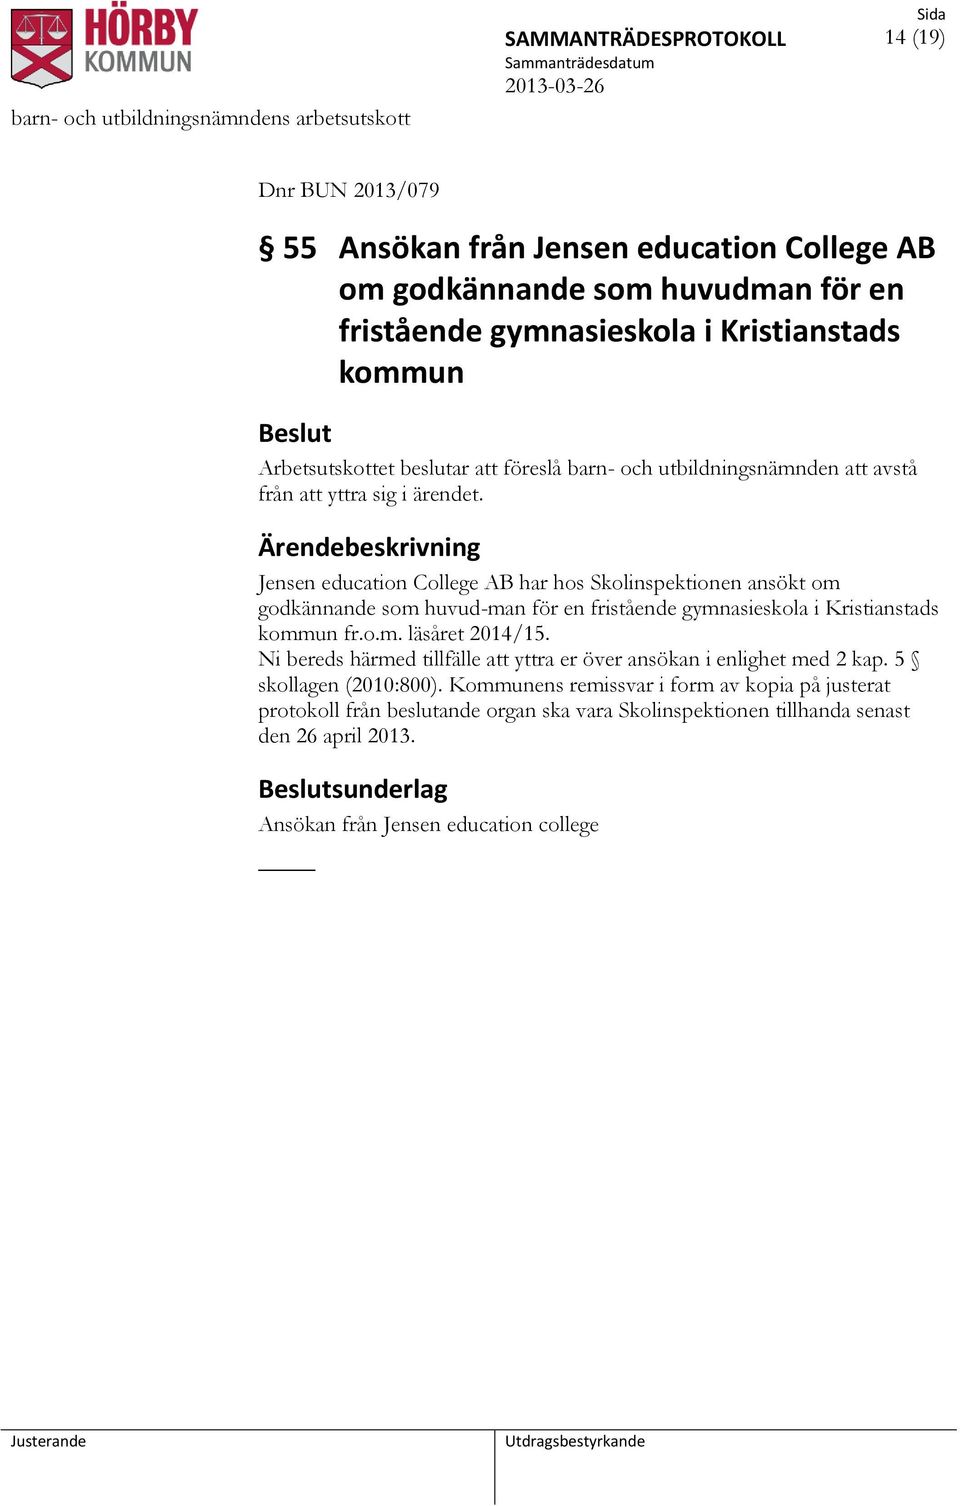 Jensen education College AB har hos Skolinspektionen ansökt om godkännande som huvud-man för en fristående gymnasieskola i Kristianstads kommun fr.o.m. läsåret 2014/15.